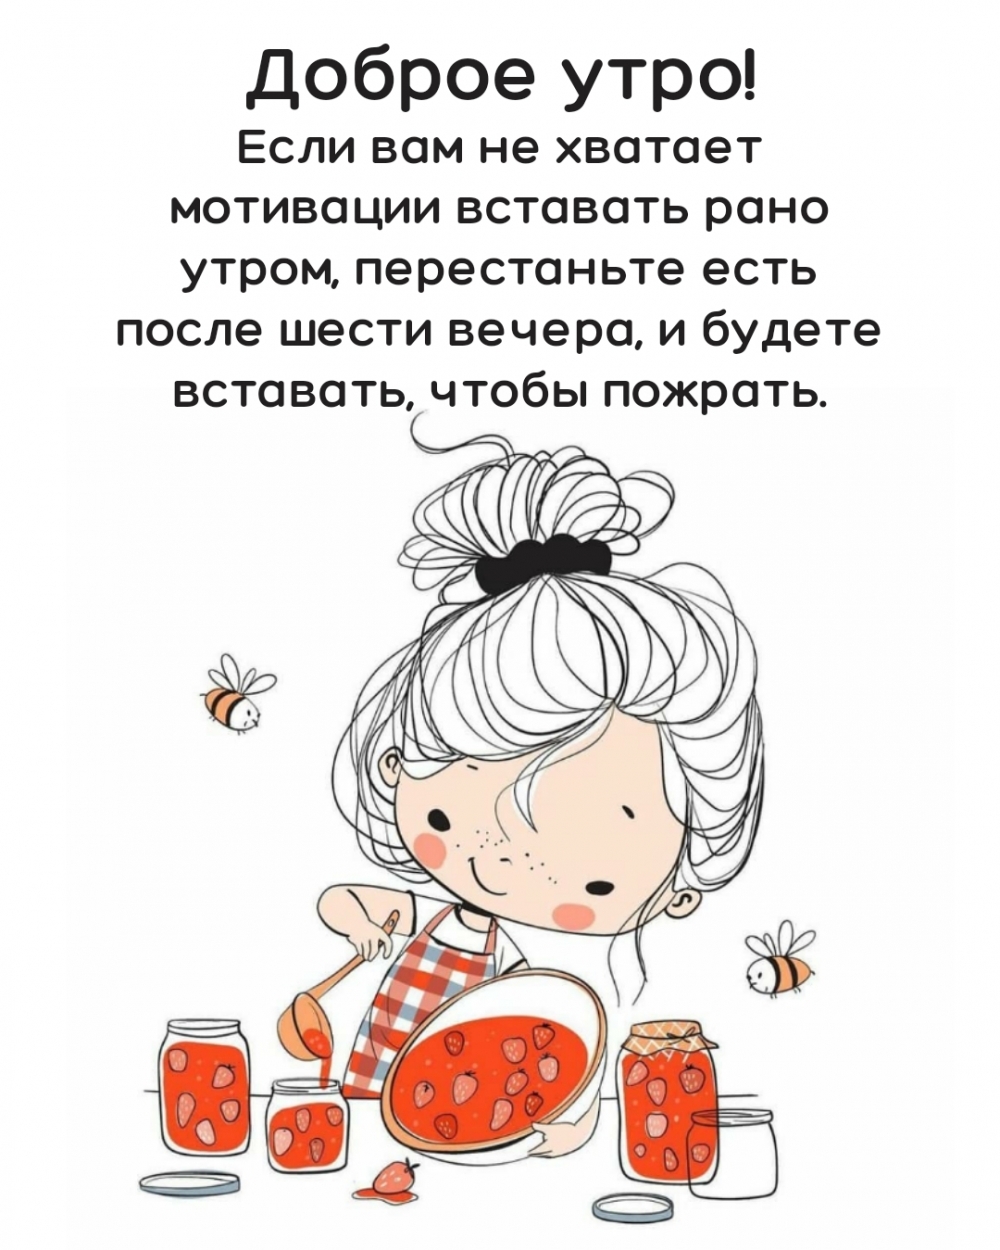 imagetext_ru_25362.jpg